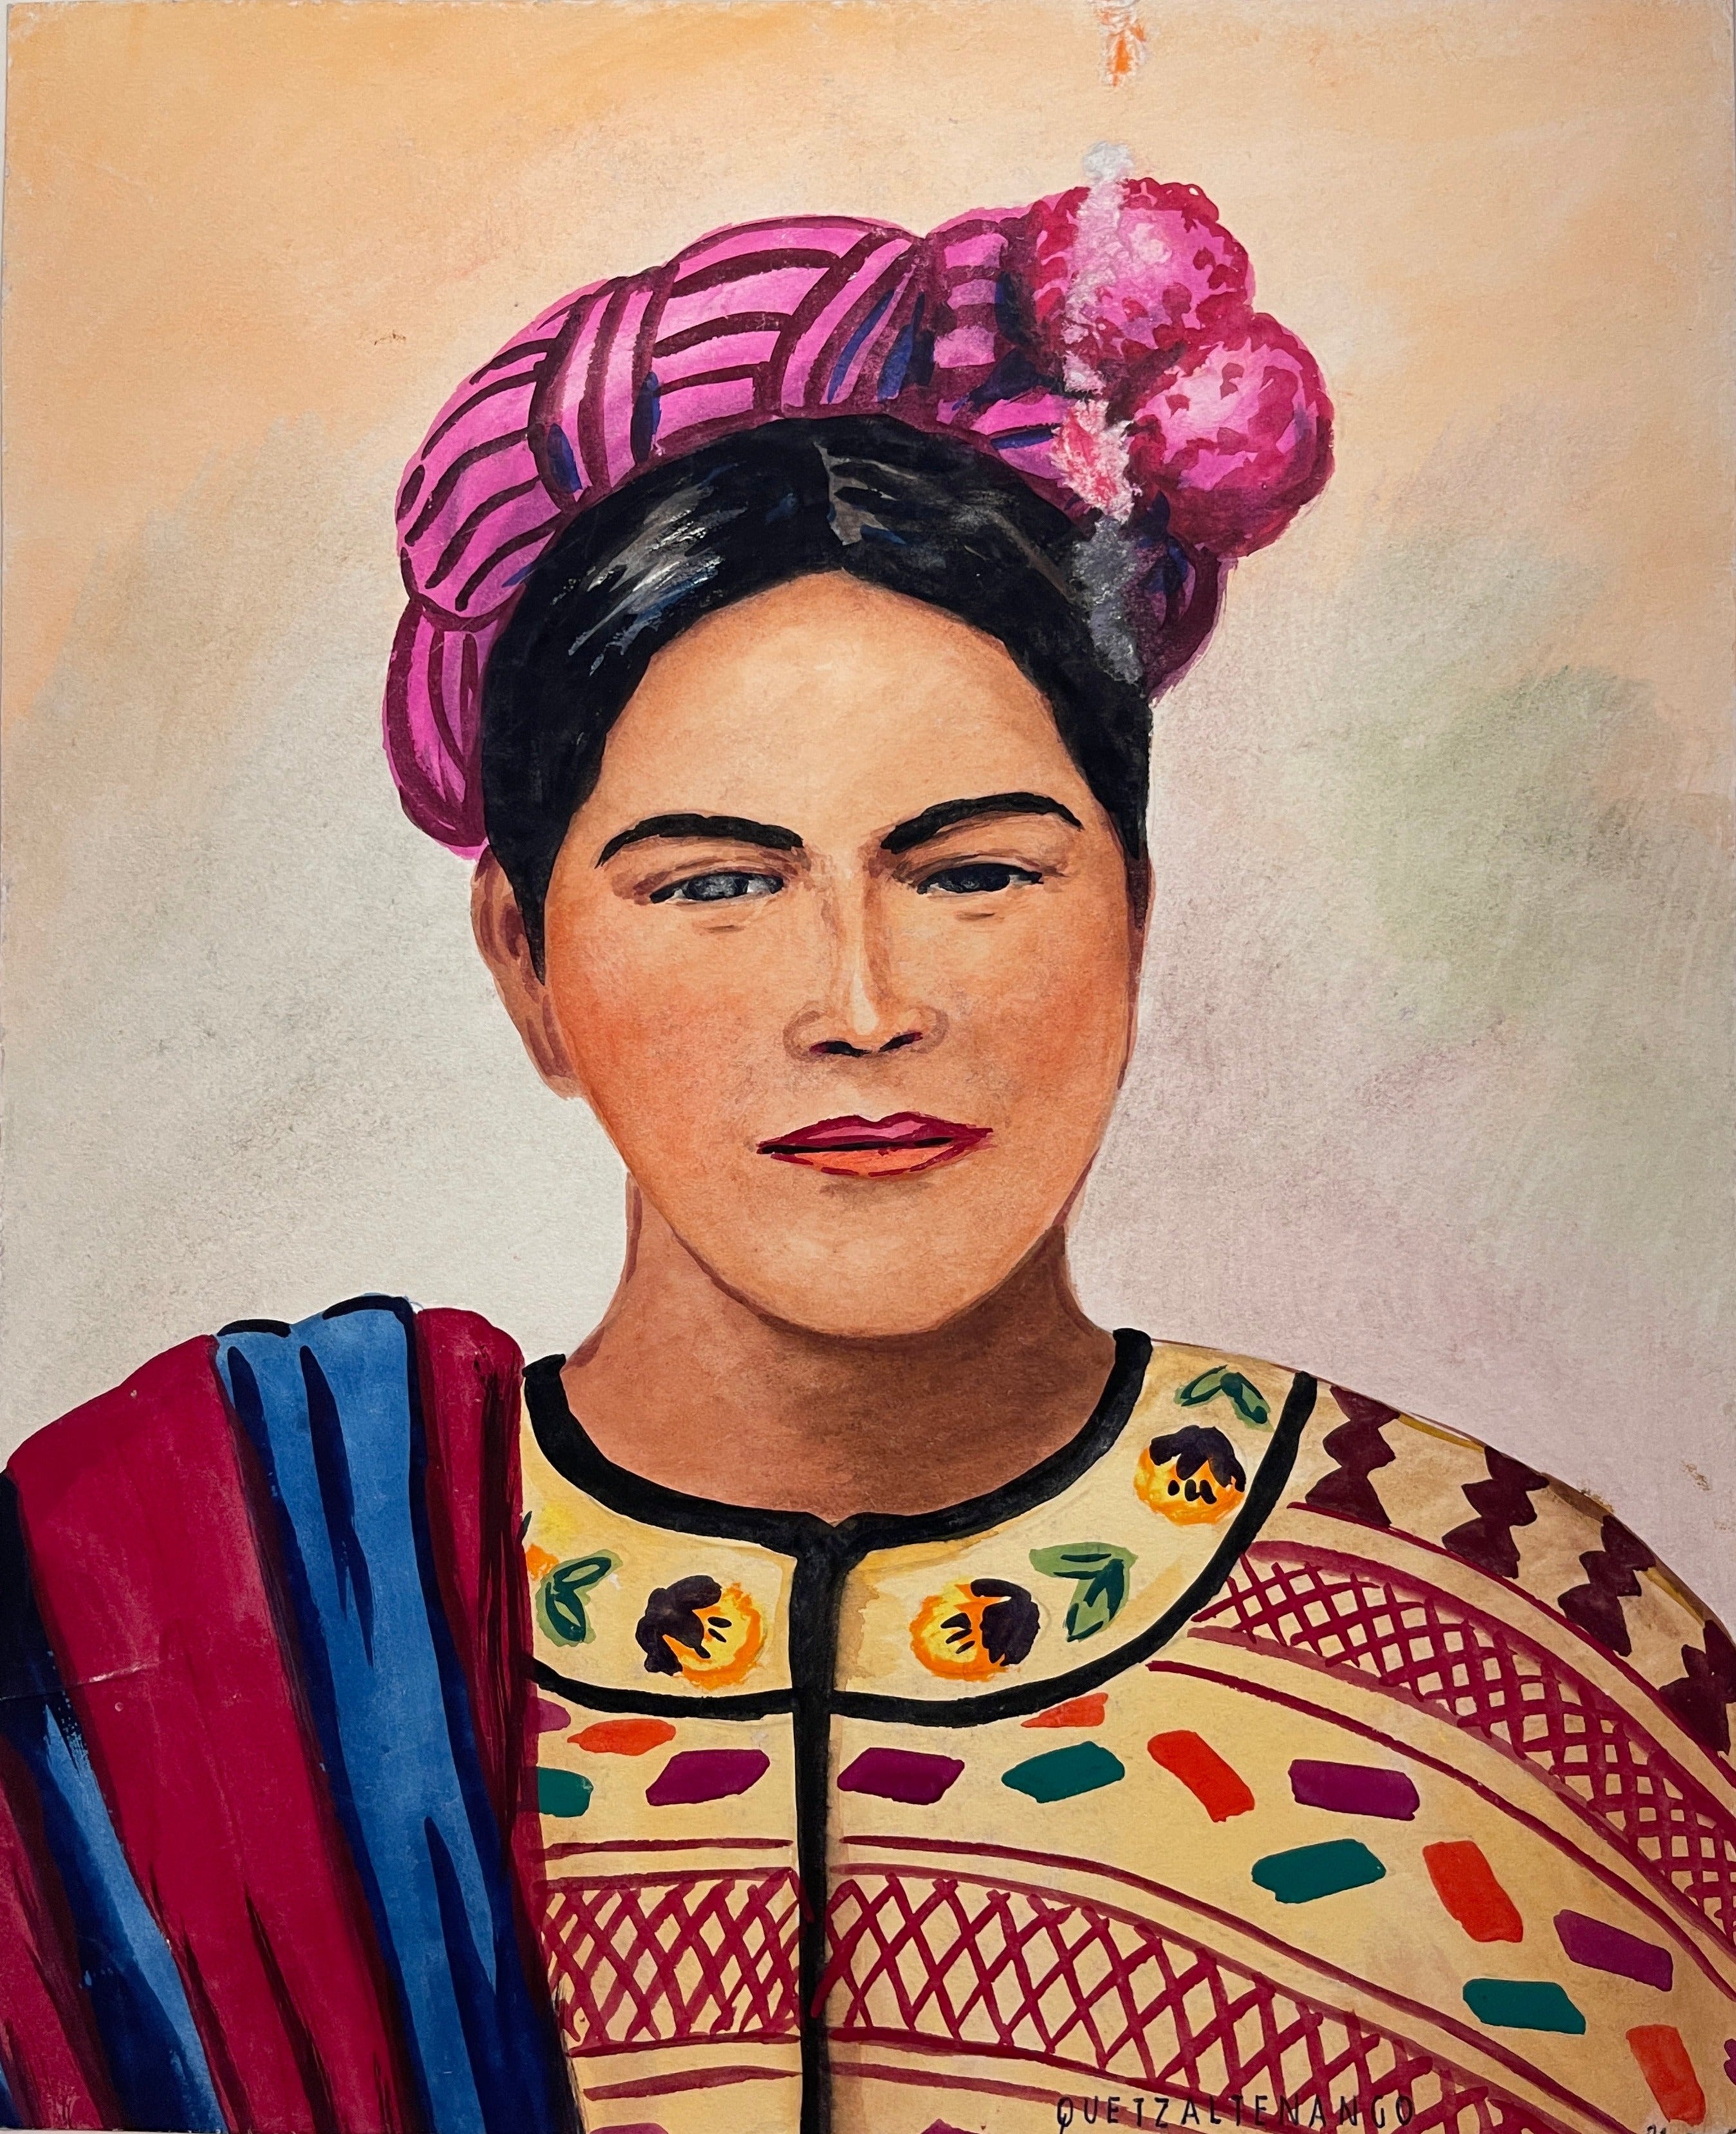 Maria Navas 1950 Signed Watercolor Painting - Mayan Woman Portrait - Quetzaltenango at Adirondack Retro